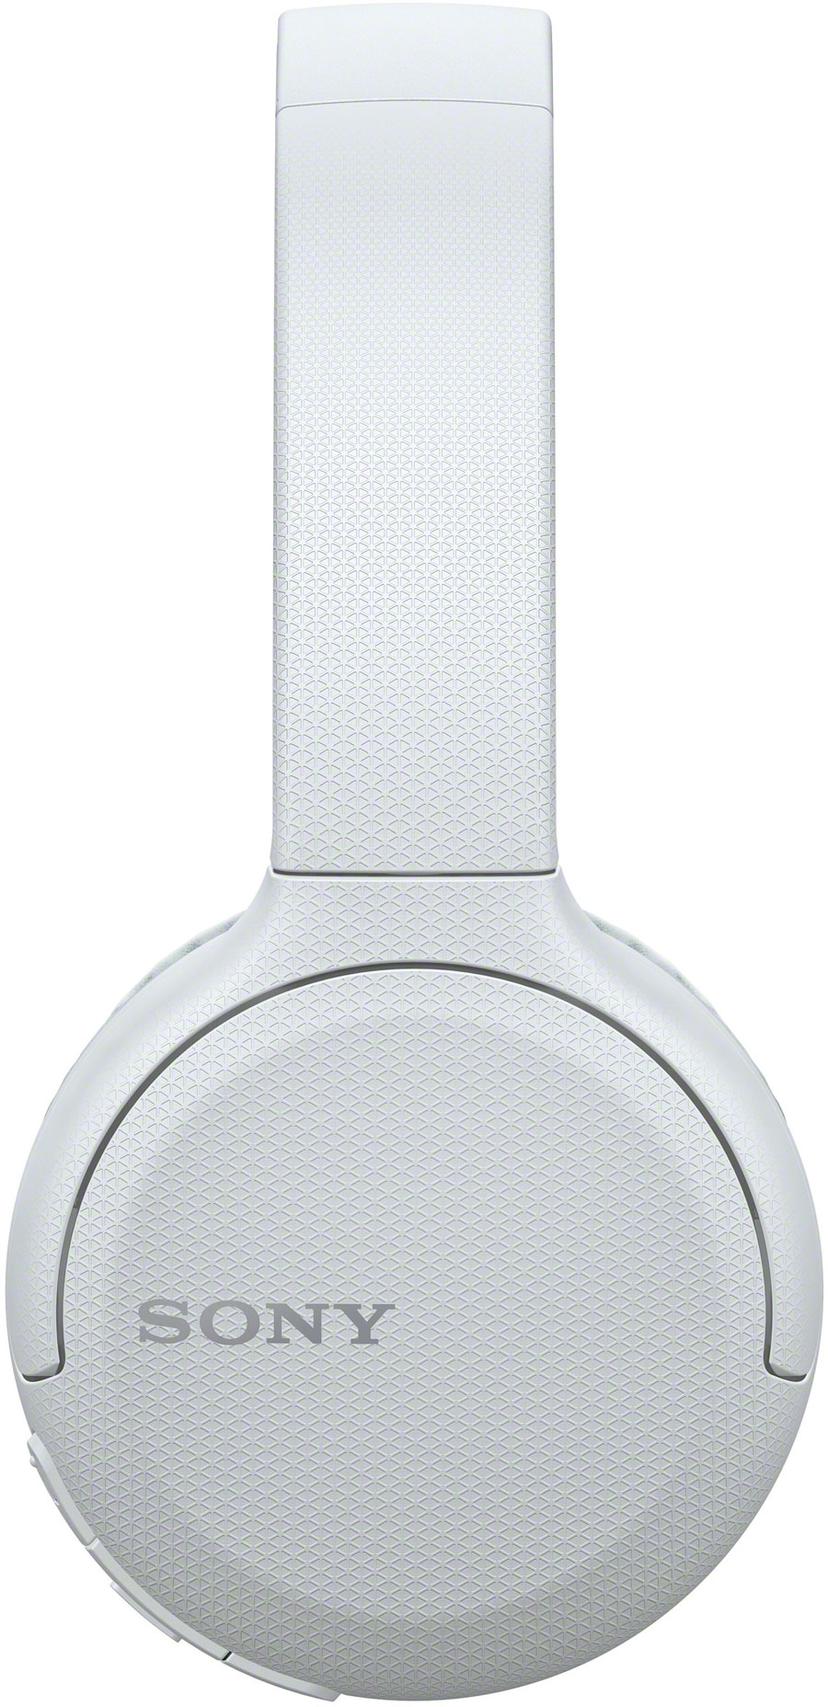 Sony WH-CH510 trådlösa hörlurar med mikrofon Hörlurar Stereo Vit